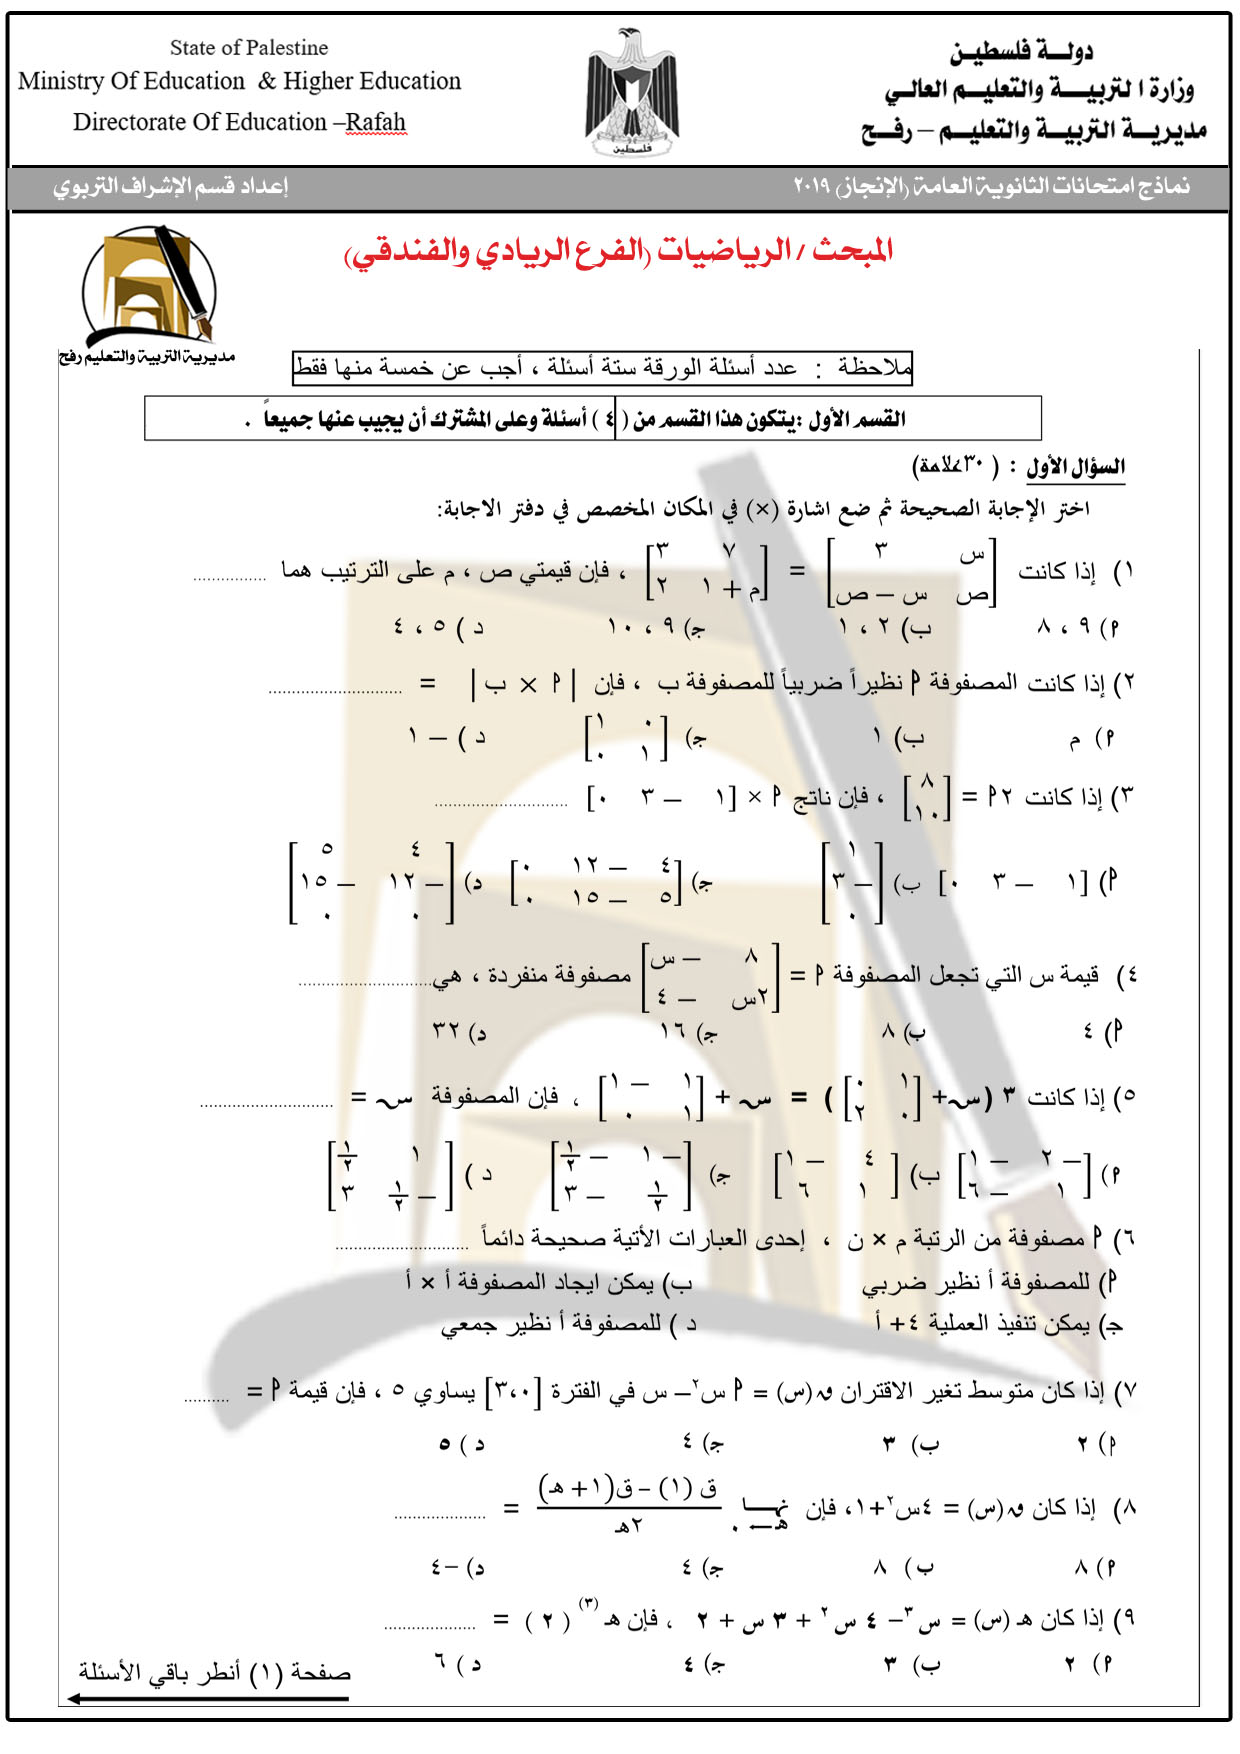 امتحانات لجنة توجيهي الرياضيات "ادبي+شرعي+علمي+فندقي+ريادة"